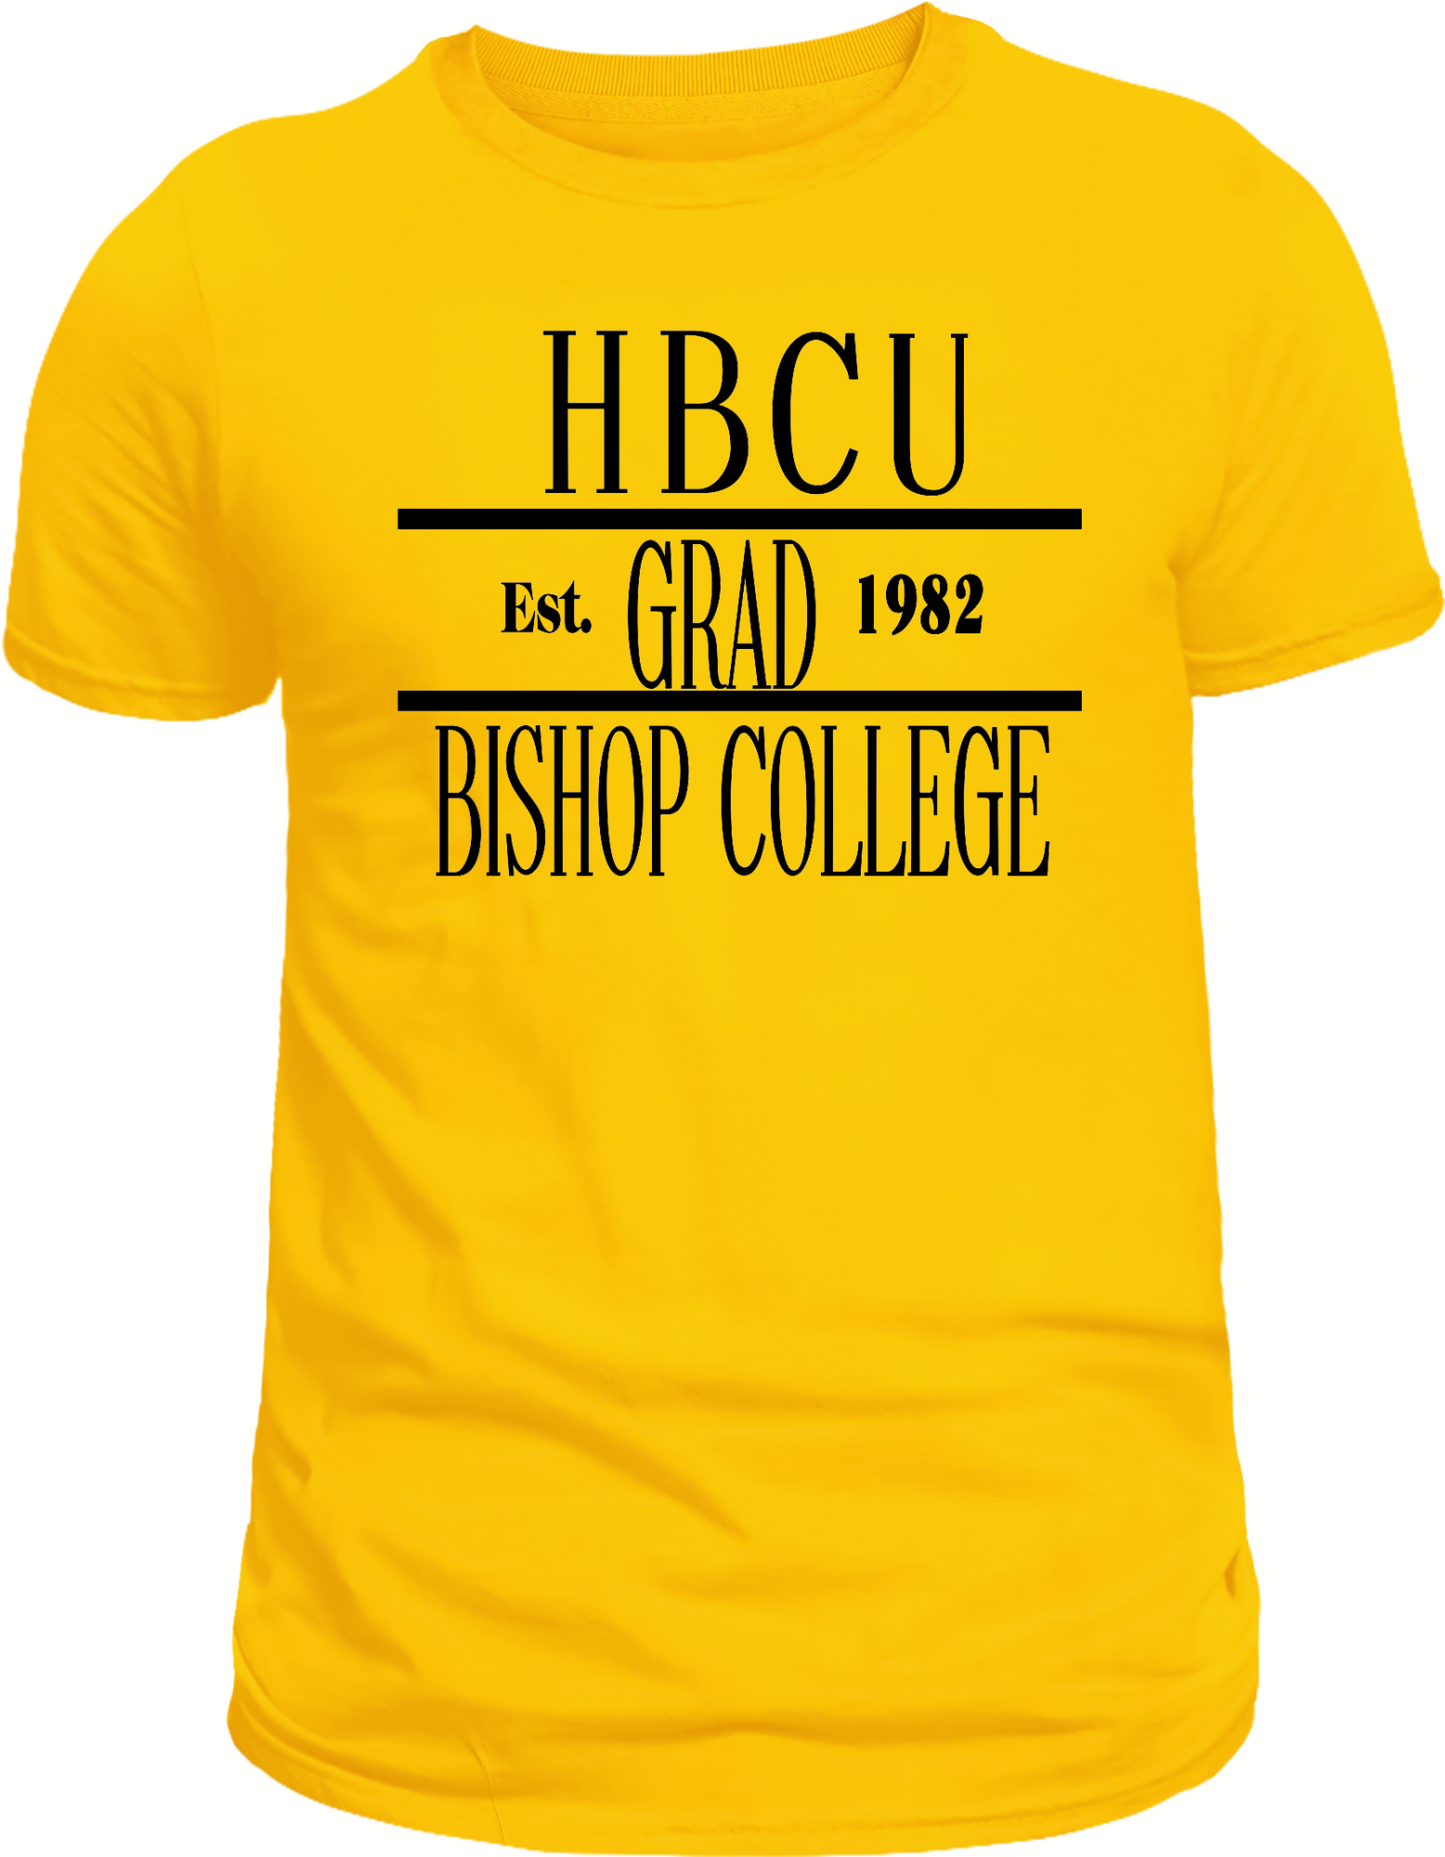 HBCU GRAD EST, Custom College/University Unisex T-shirt